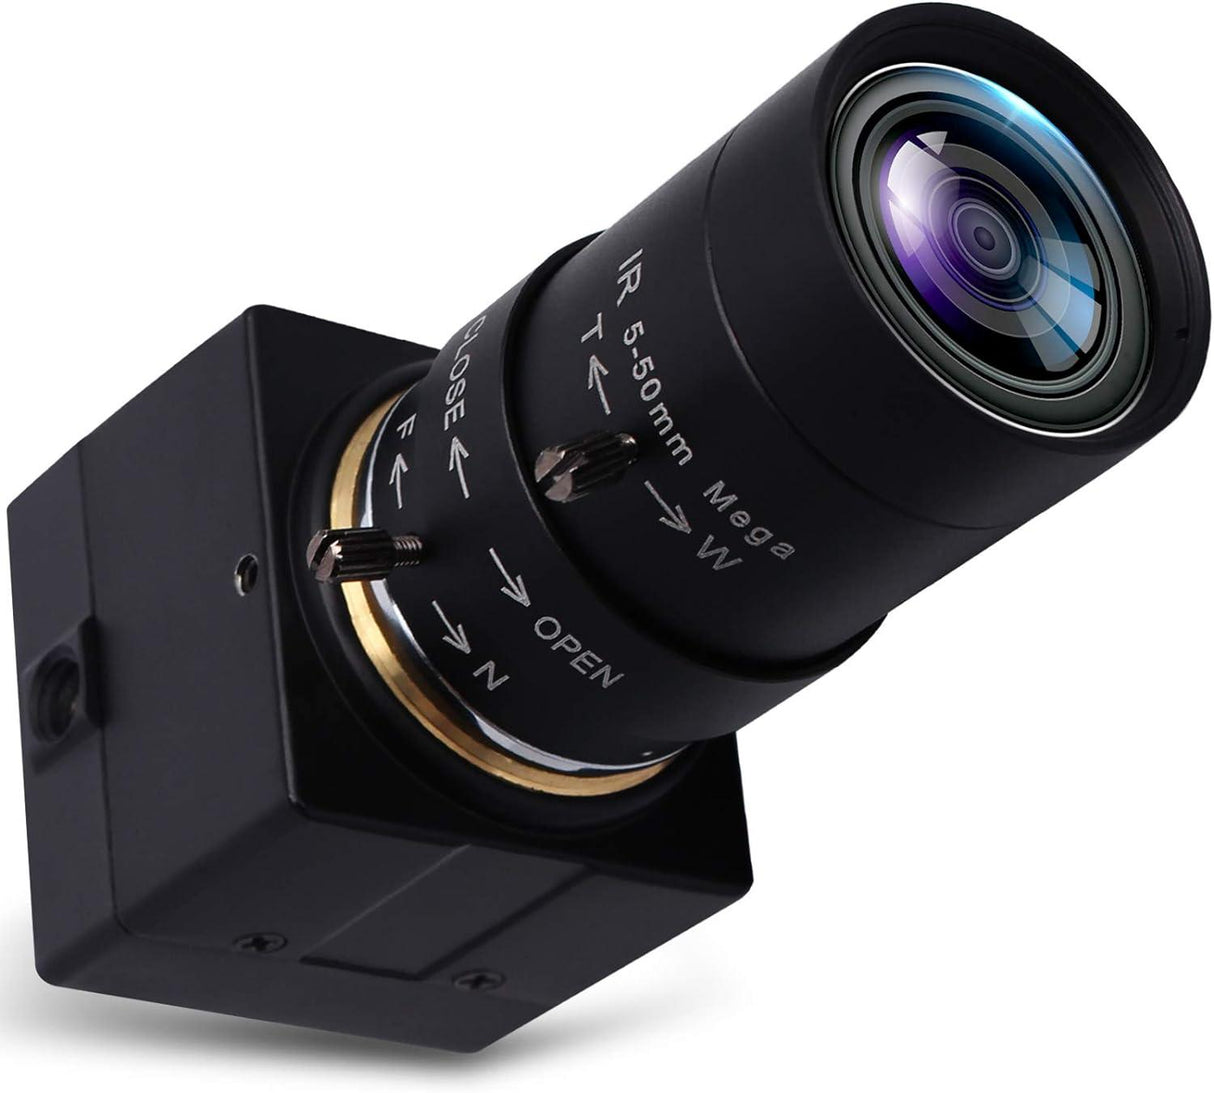 SVPRO 5-50mm Zoom Lens USB Kamera 1080P, Sony IMX323 Szenzorral, H.264 HD Kamera Ultra Alacsony Fényérzékenységgel, PC Webcam Windows Linux Mac Android rendszerekhez